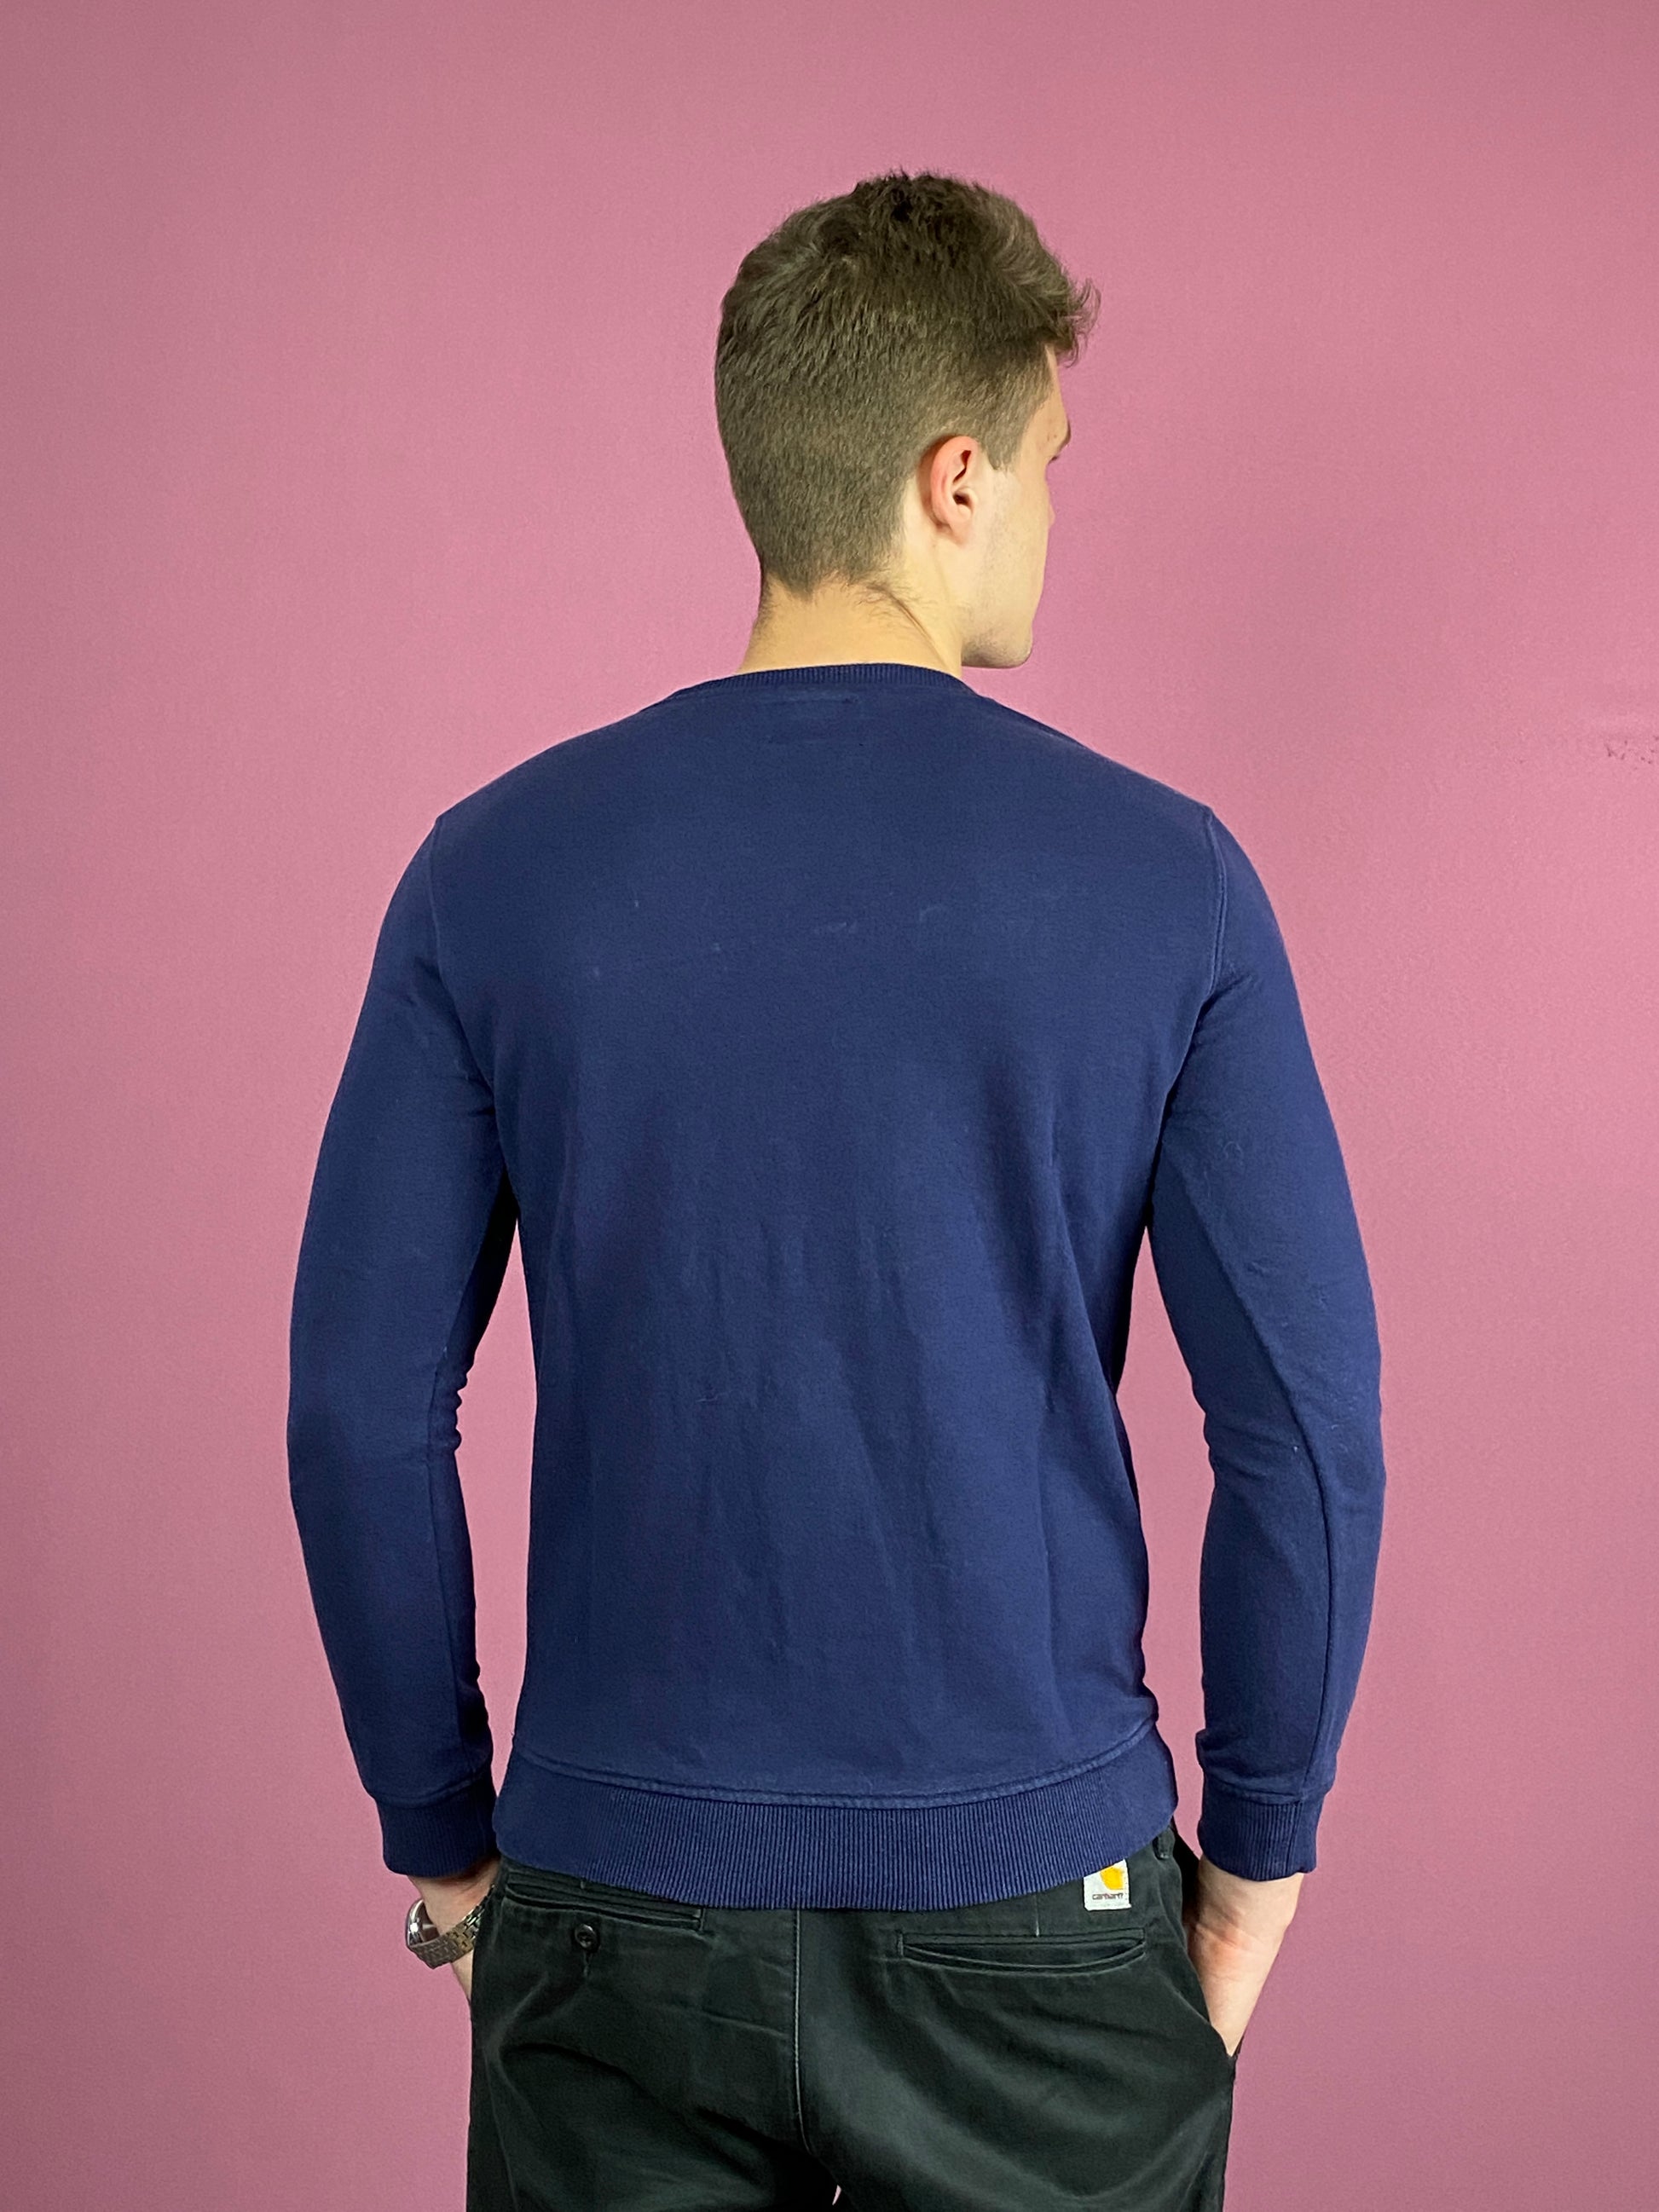 Tommy Hilfiger Vintage Men's Sweatshirt - Medium Navy Blue Cotton